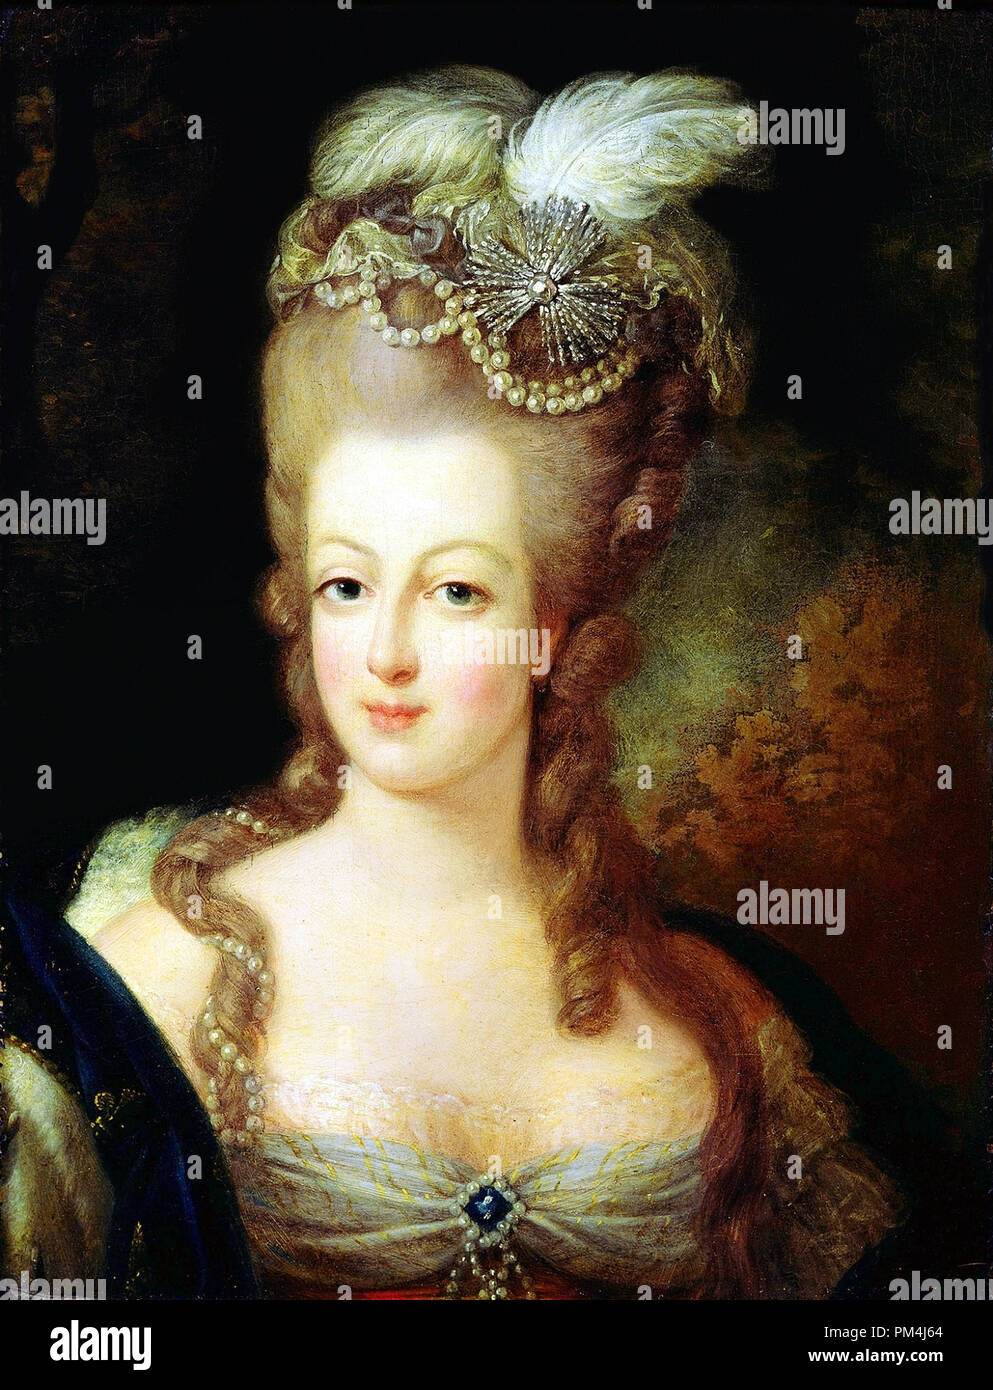 Ritratto di Maria Antonietta (1755-1793) attribuito a Giovanni Battista Gautier Dagoty. Pittura posizione corrente Musée Antoine-Lécuyer a Saint-Quentin, Francia Riferimento File # 1003 552THA Foto Stock